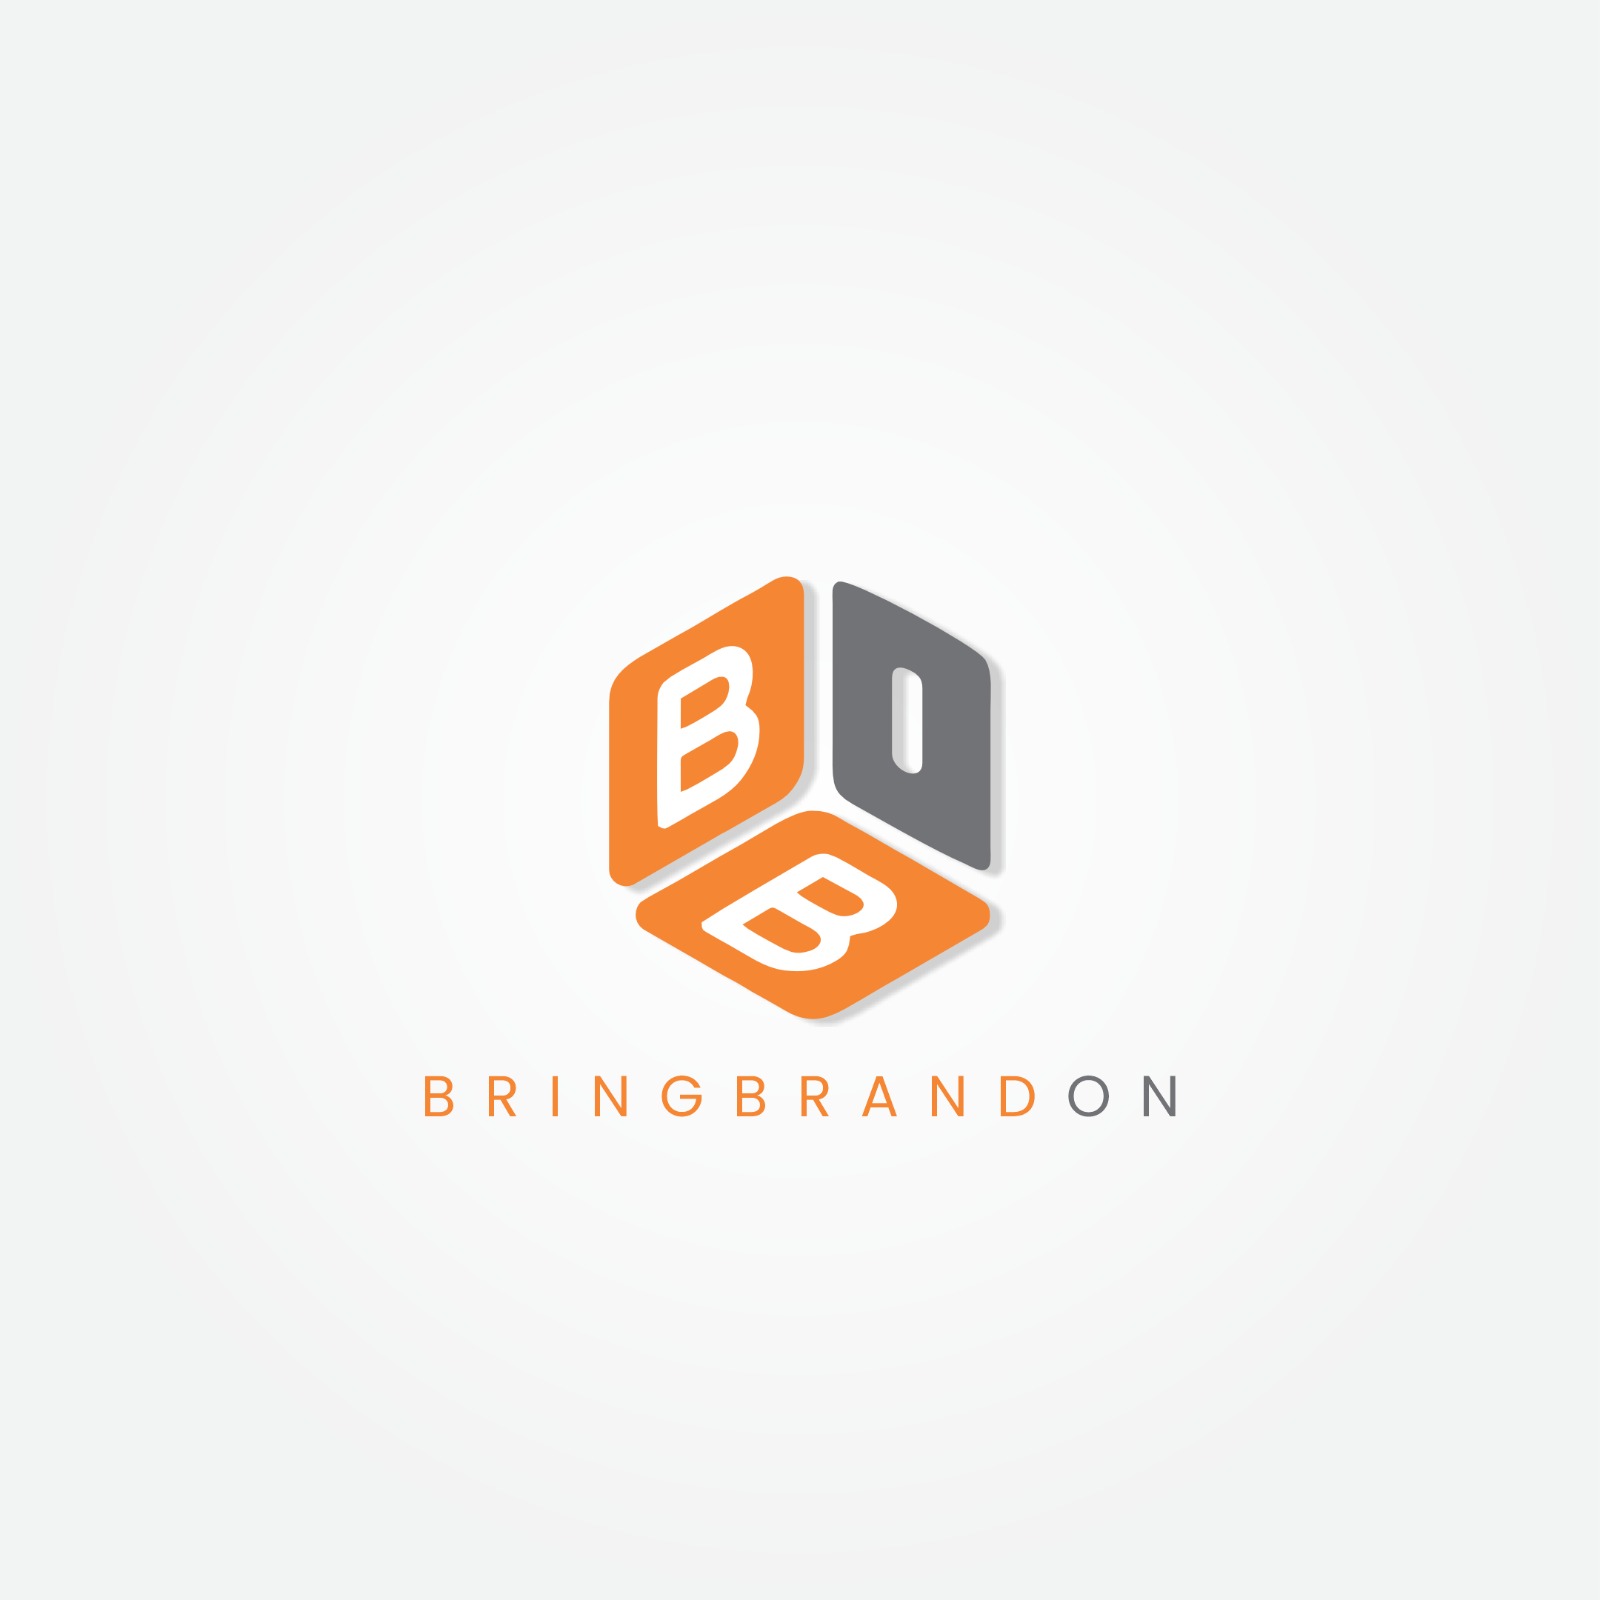 bringbrandon | advertisement services in ludhiana